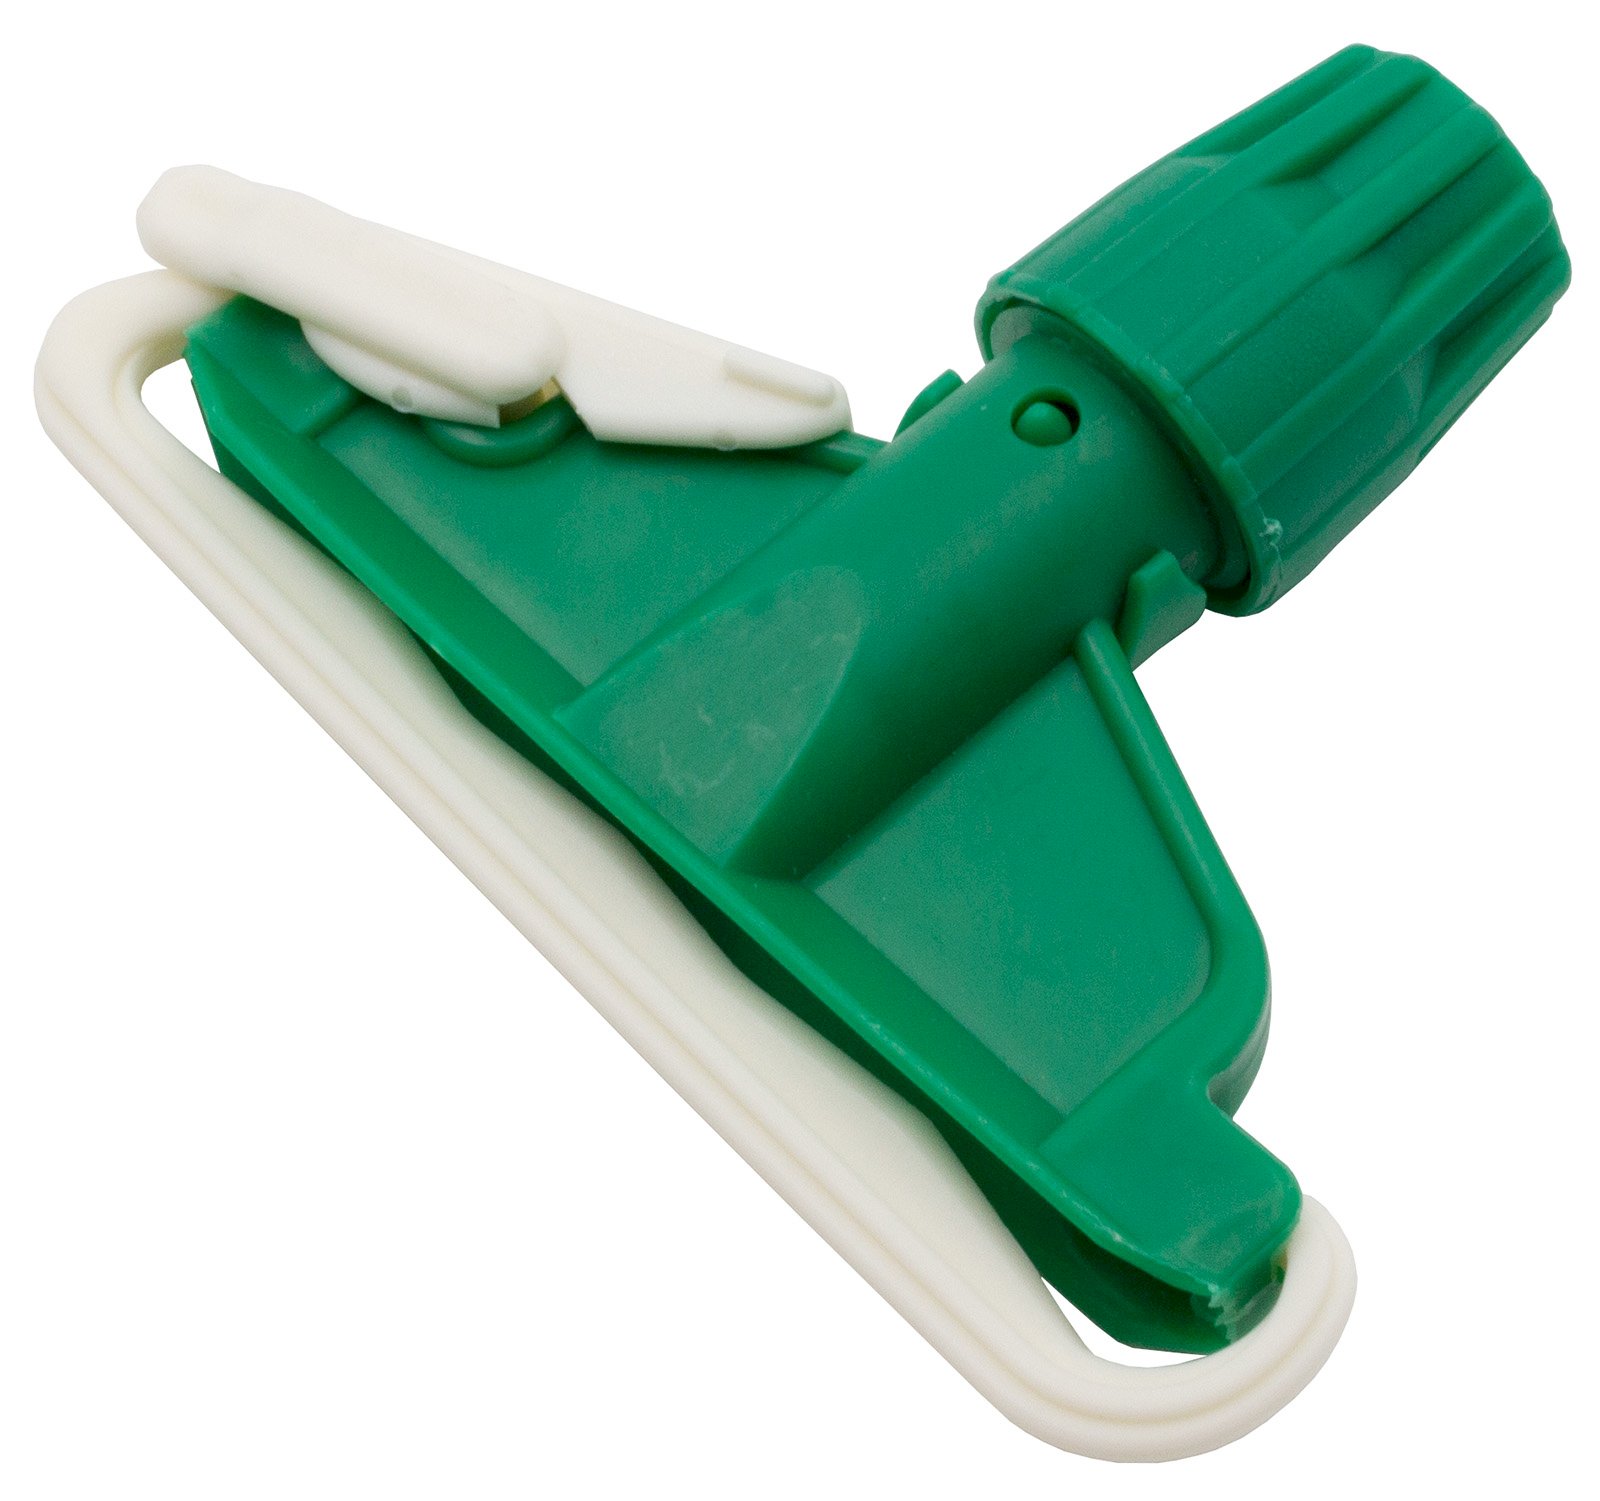 Зажим для мопа кентукки Optiline применяется для фиксации мопа кентукки. Выполнен из противоударного пластика зеленого цвета, устойчив к агрессивным моющим средствам. Предназначен для проведения влажной уборки внутренних помещений. Подходит для рукояток с фиксаторным креплением. Поставляется в индивидуальном прозрачном пакете.